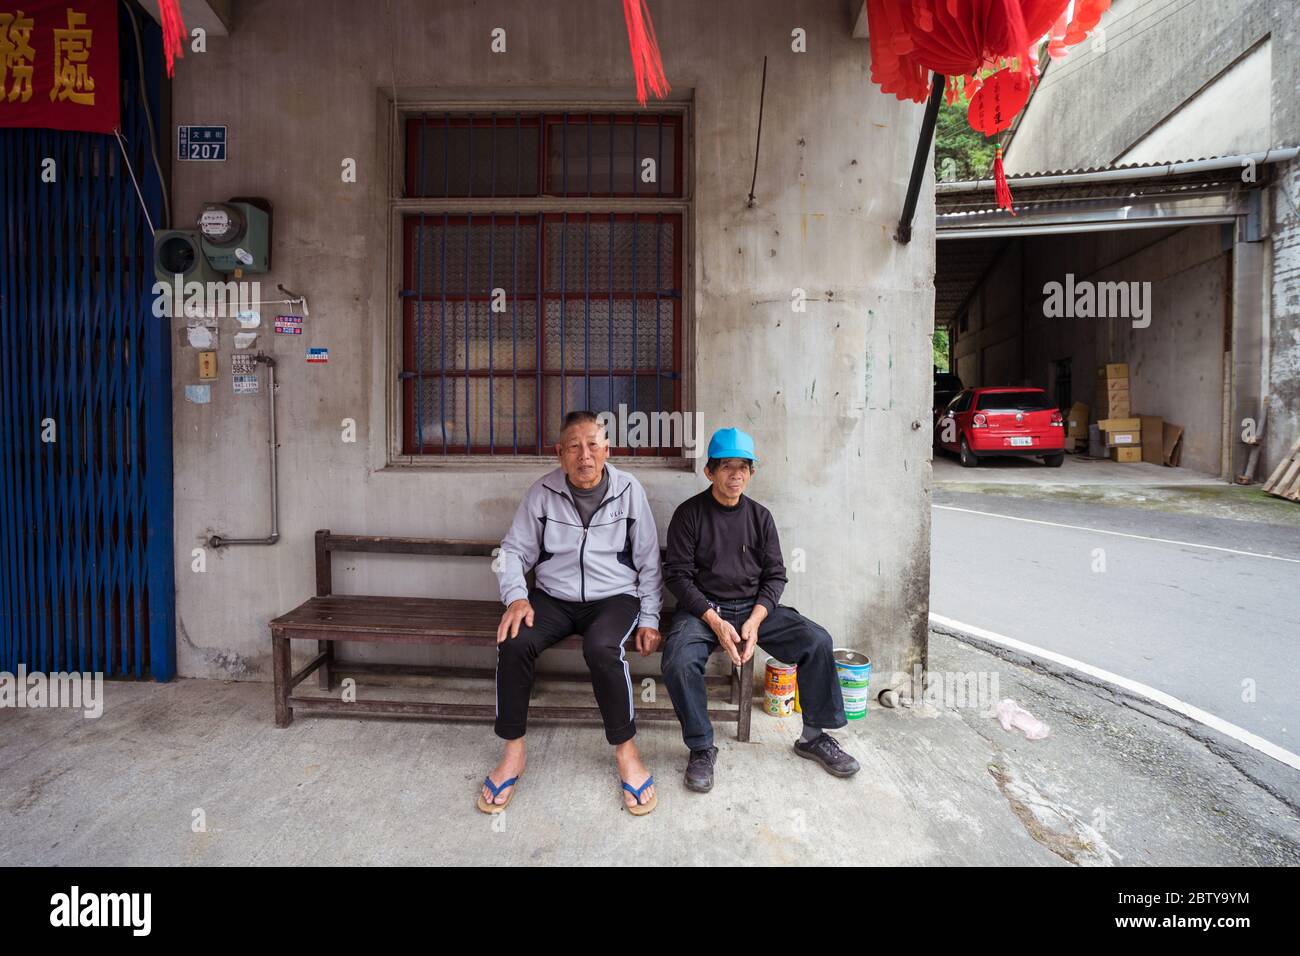 Hsinchu / Taiwan - 15 septembre 2019 : Portrait des hommes taïwanais dans la ville rurale Banque D'Images